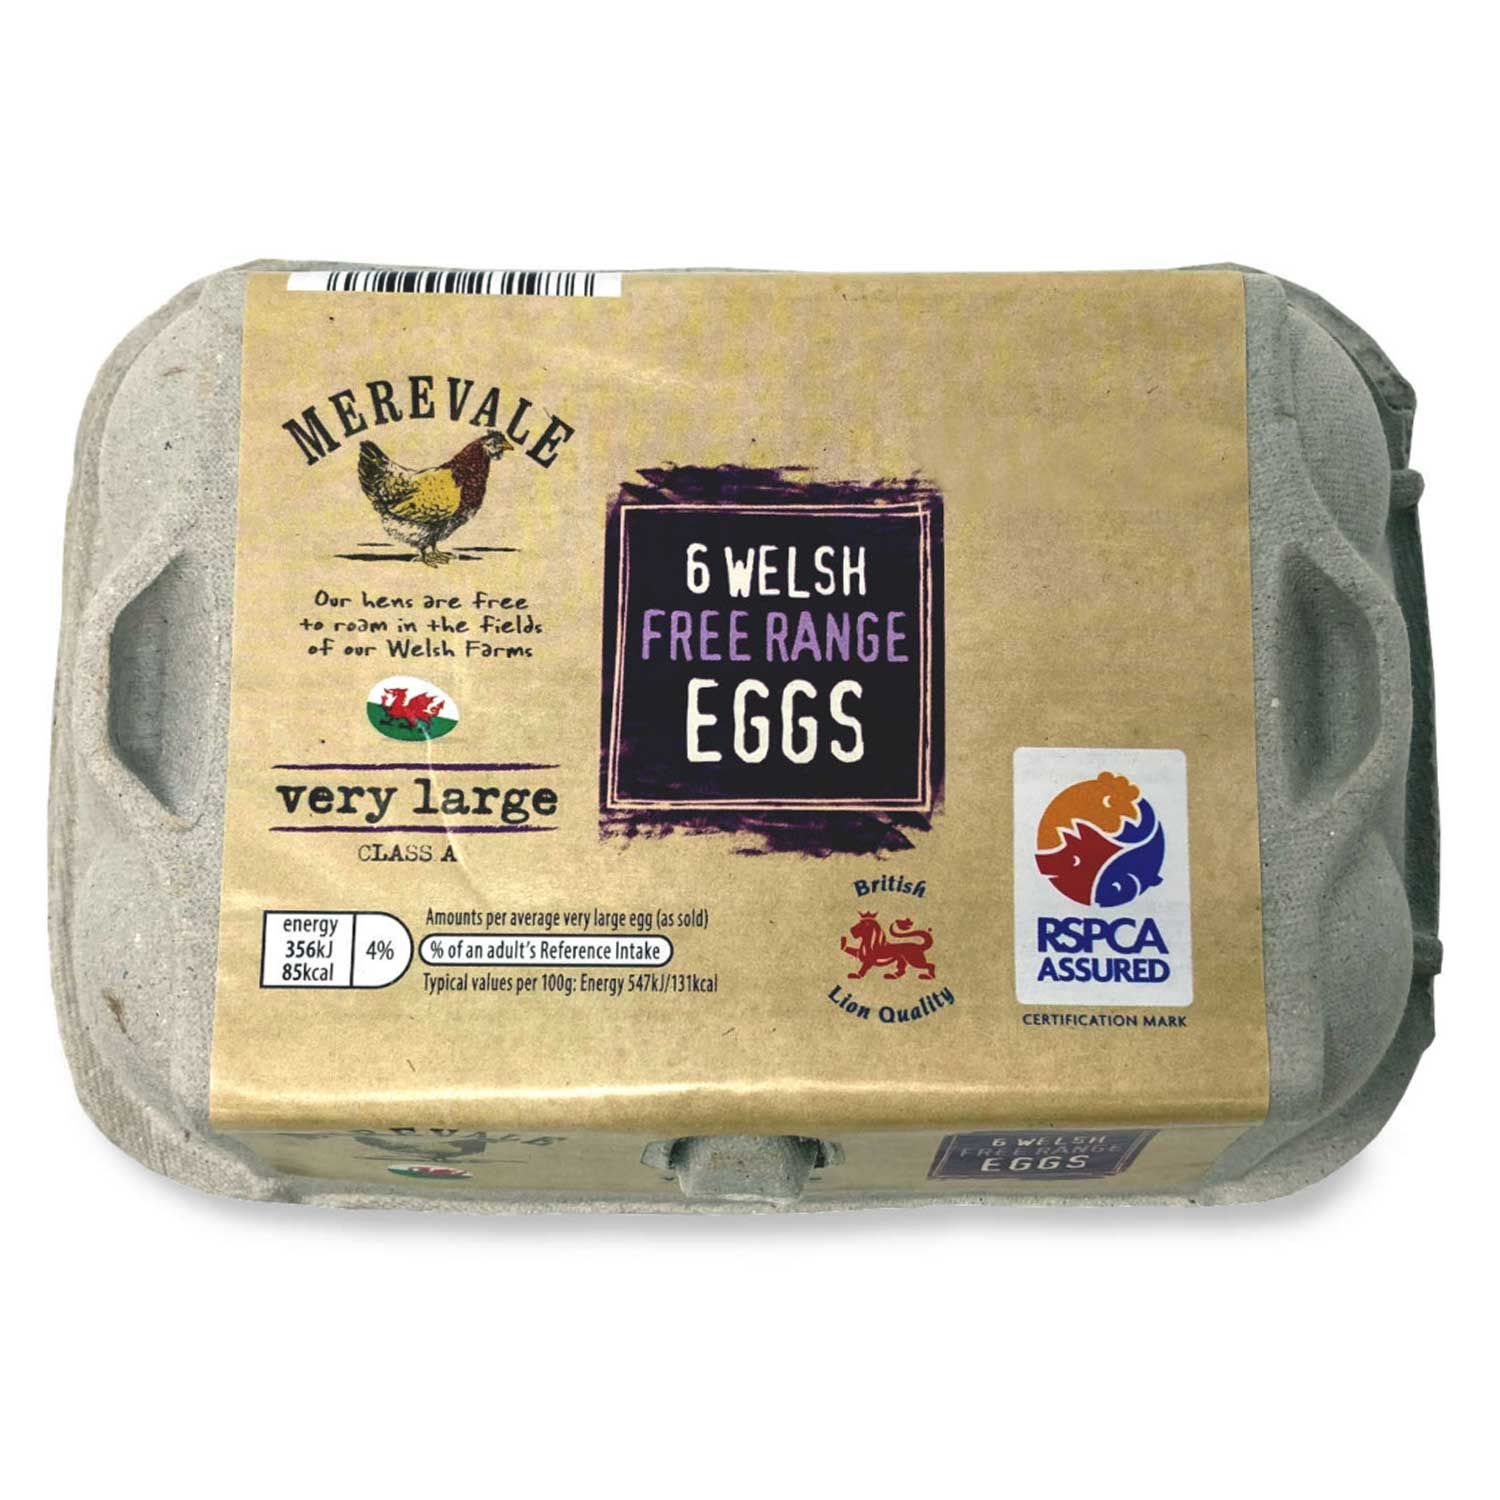 Merevale Very Large Welsh Free Range Eggs 6 Pack